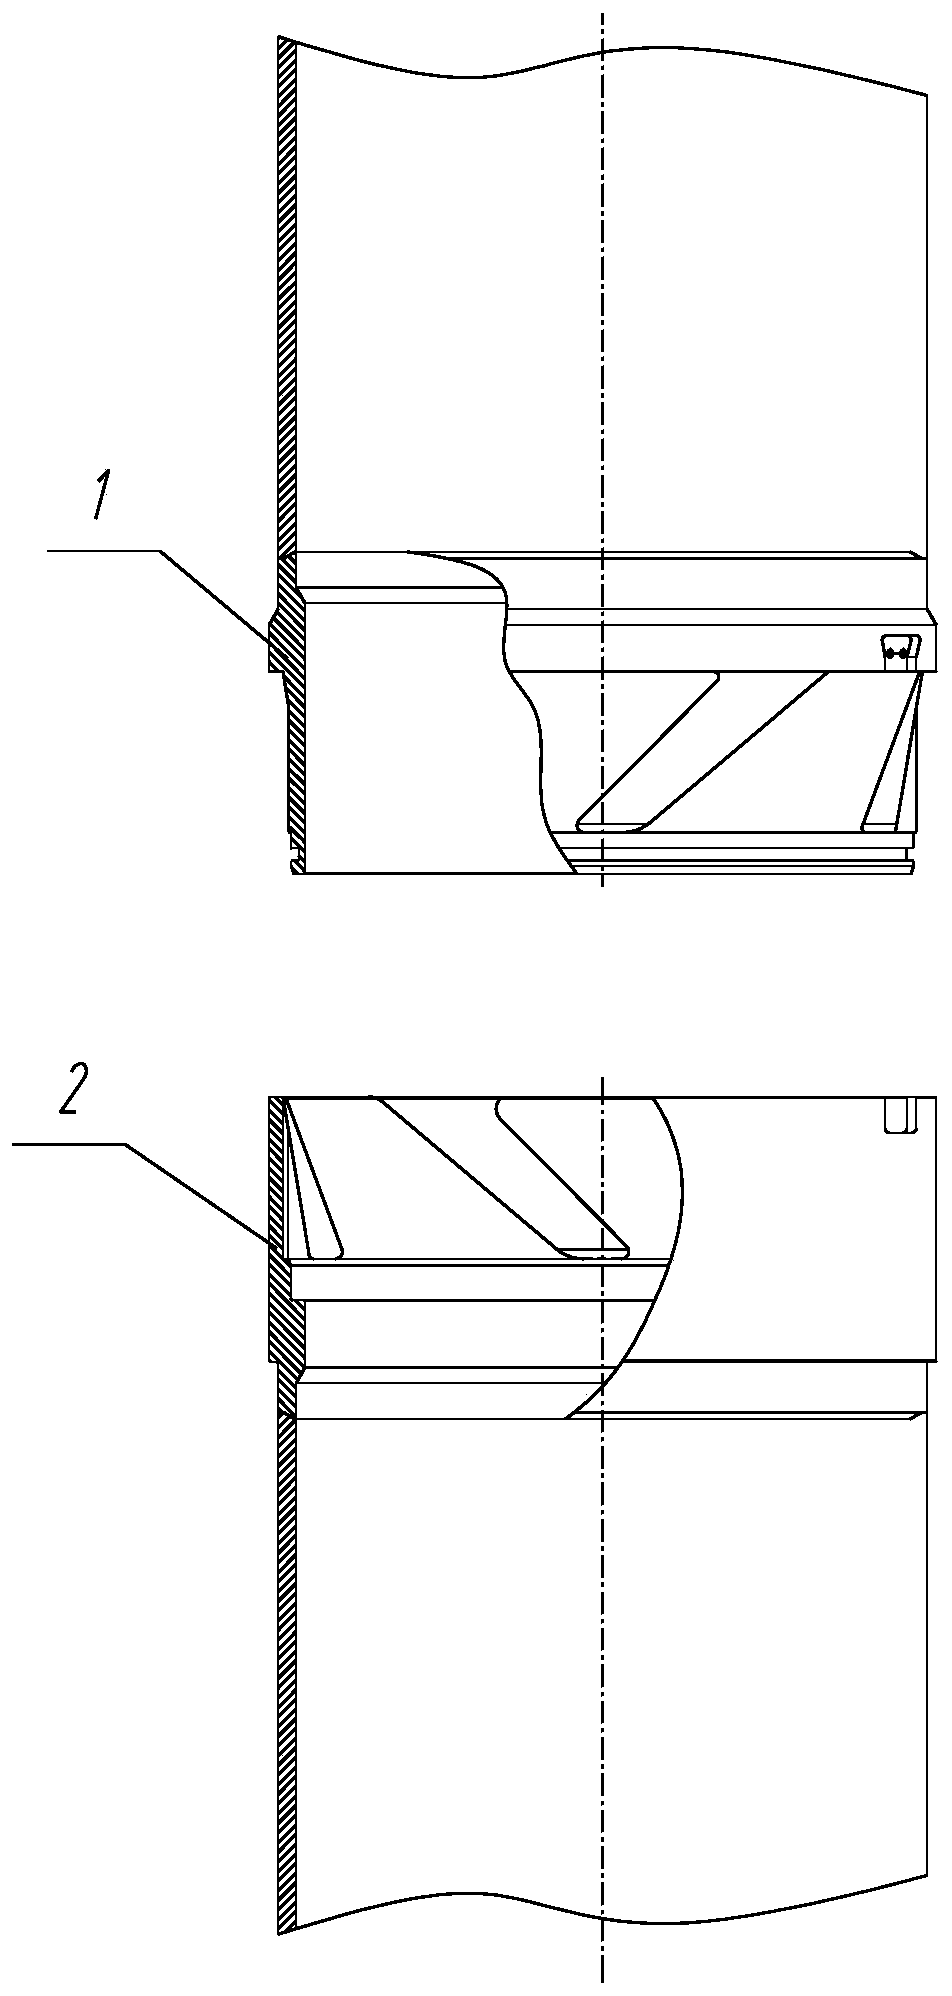 Import-type hammering riser joint